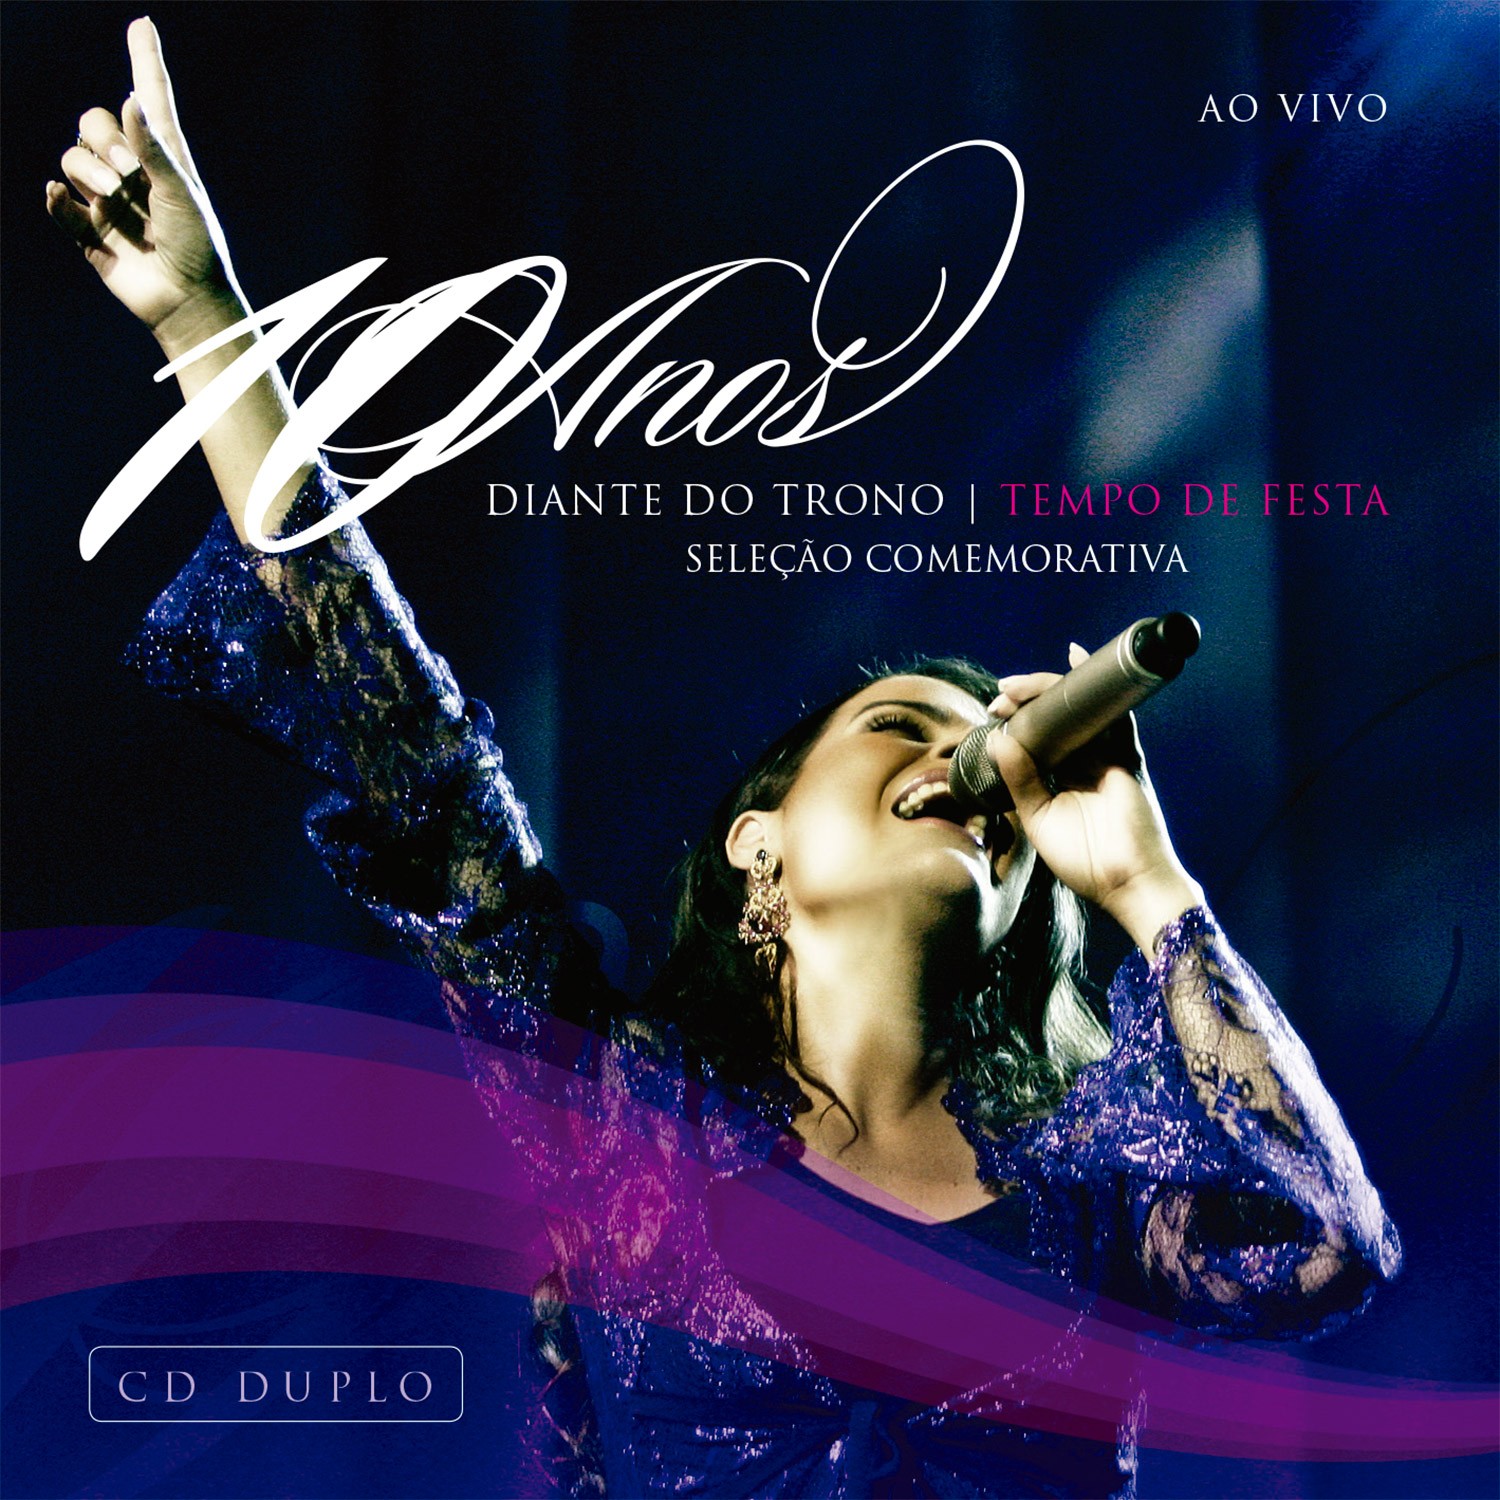 Download Diante do Trono - DVD 10 Anos: Tempo de Festa (Duplo) (2007) [Mp3 Gospel] via Torrent